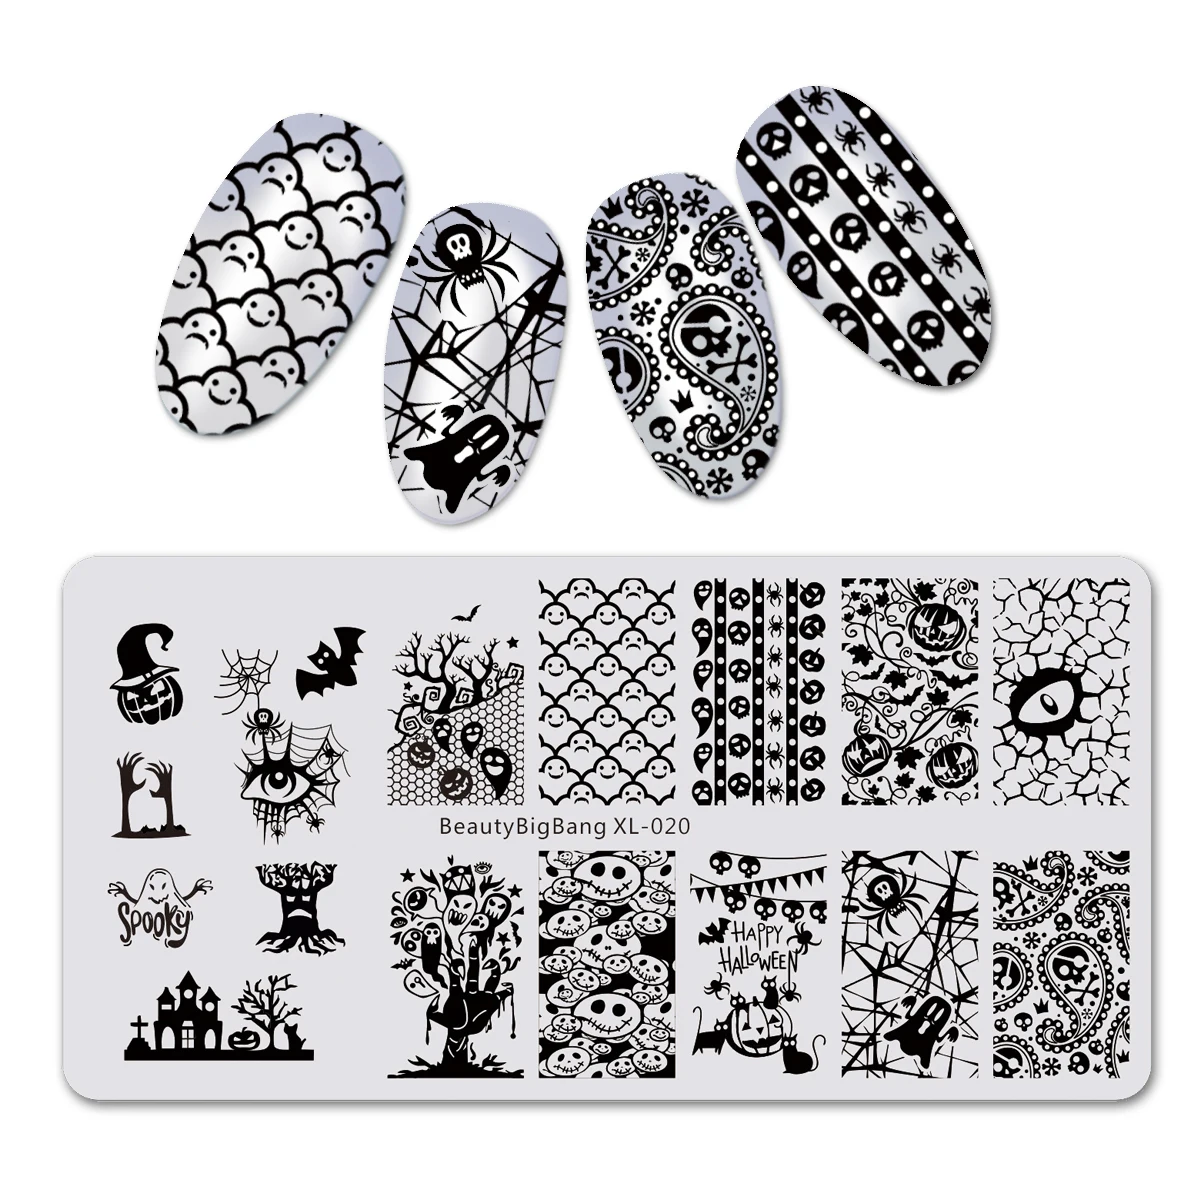 BeautyBigBang 6*12 см прямоугольные пластины для штамповки ногтей летние цветочные геометрические наклейки для ногтей шаблон и форма для ногтей трафареты